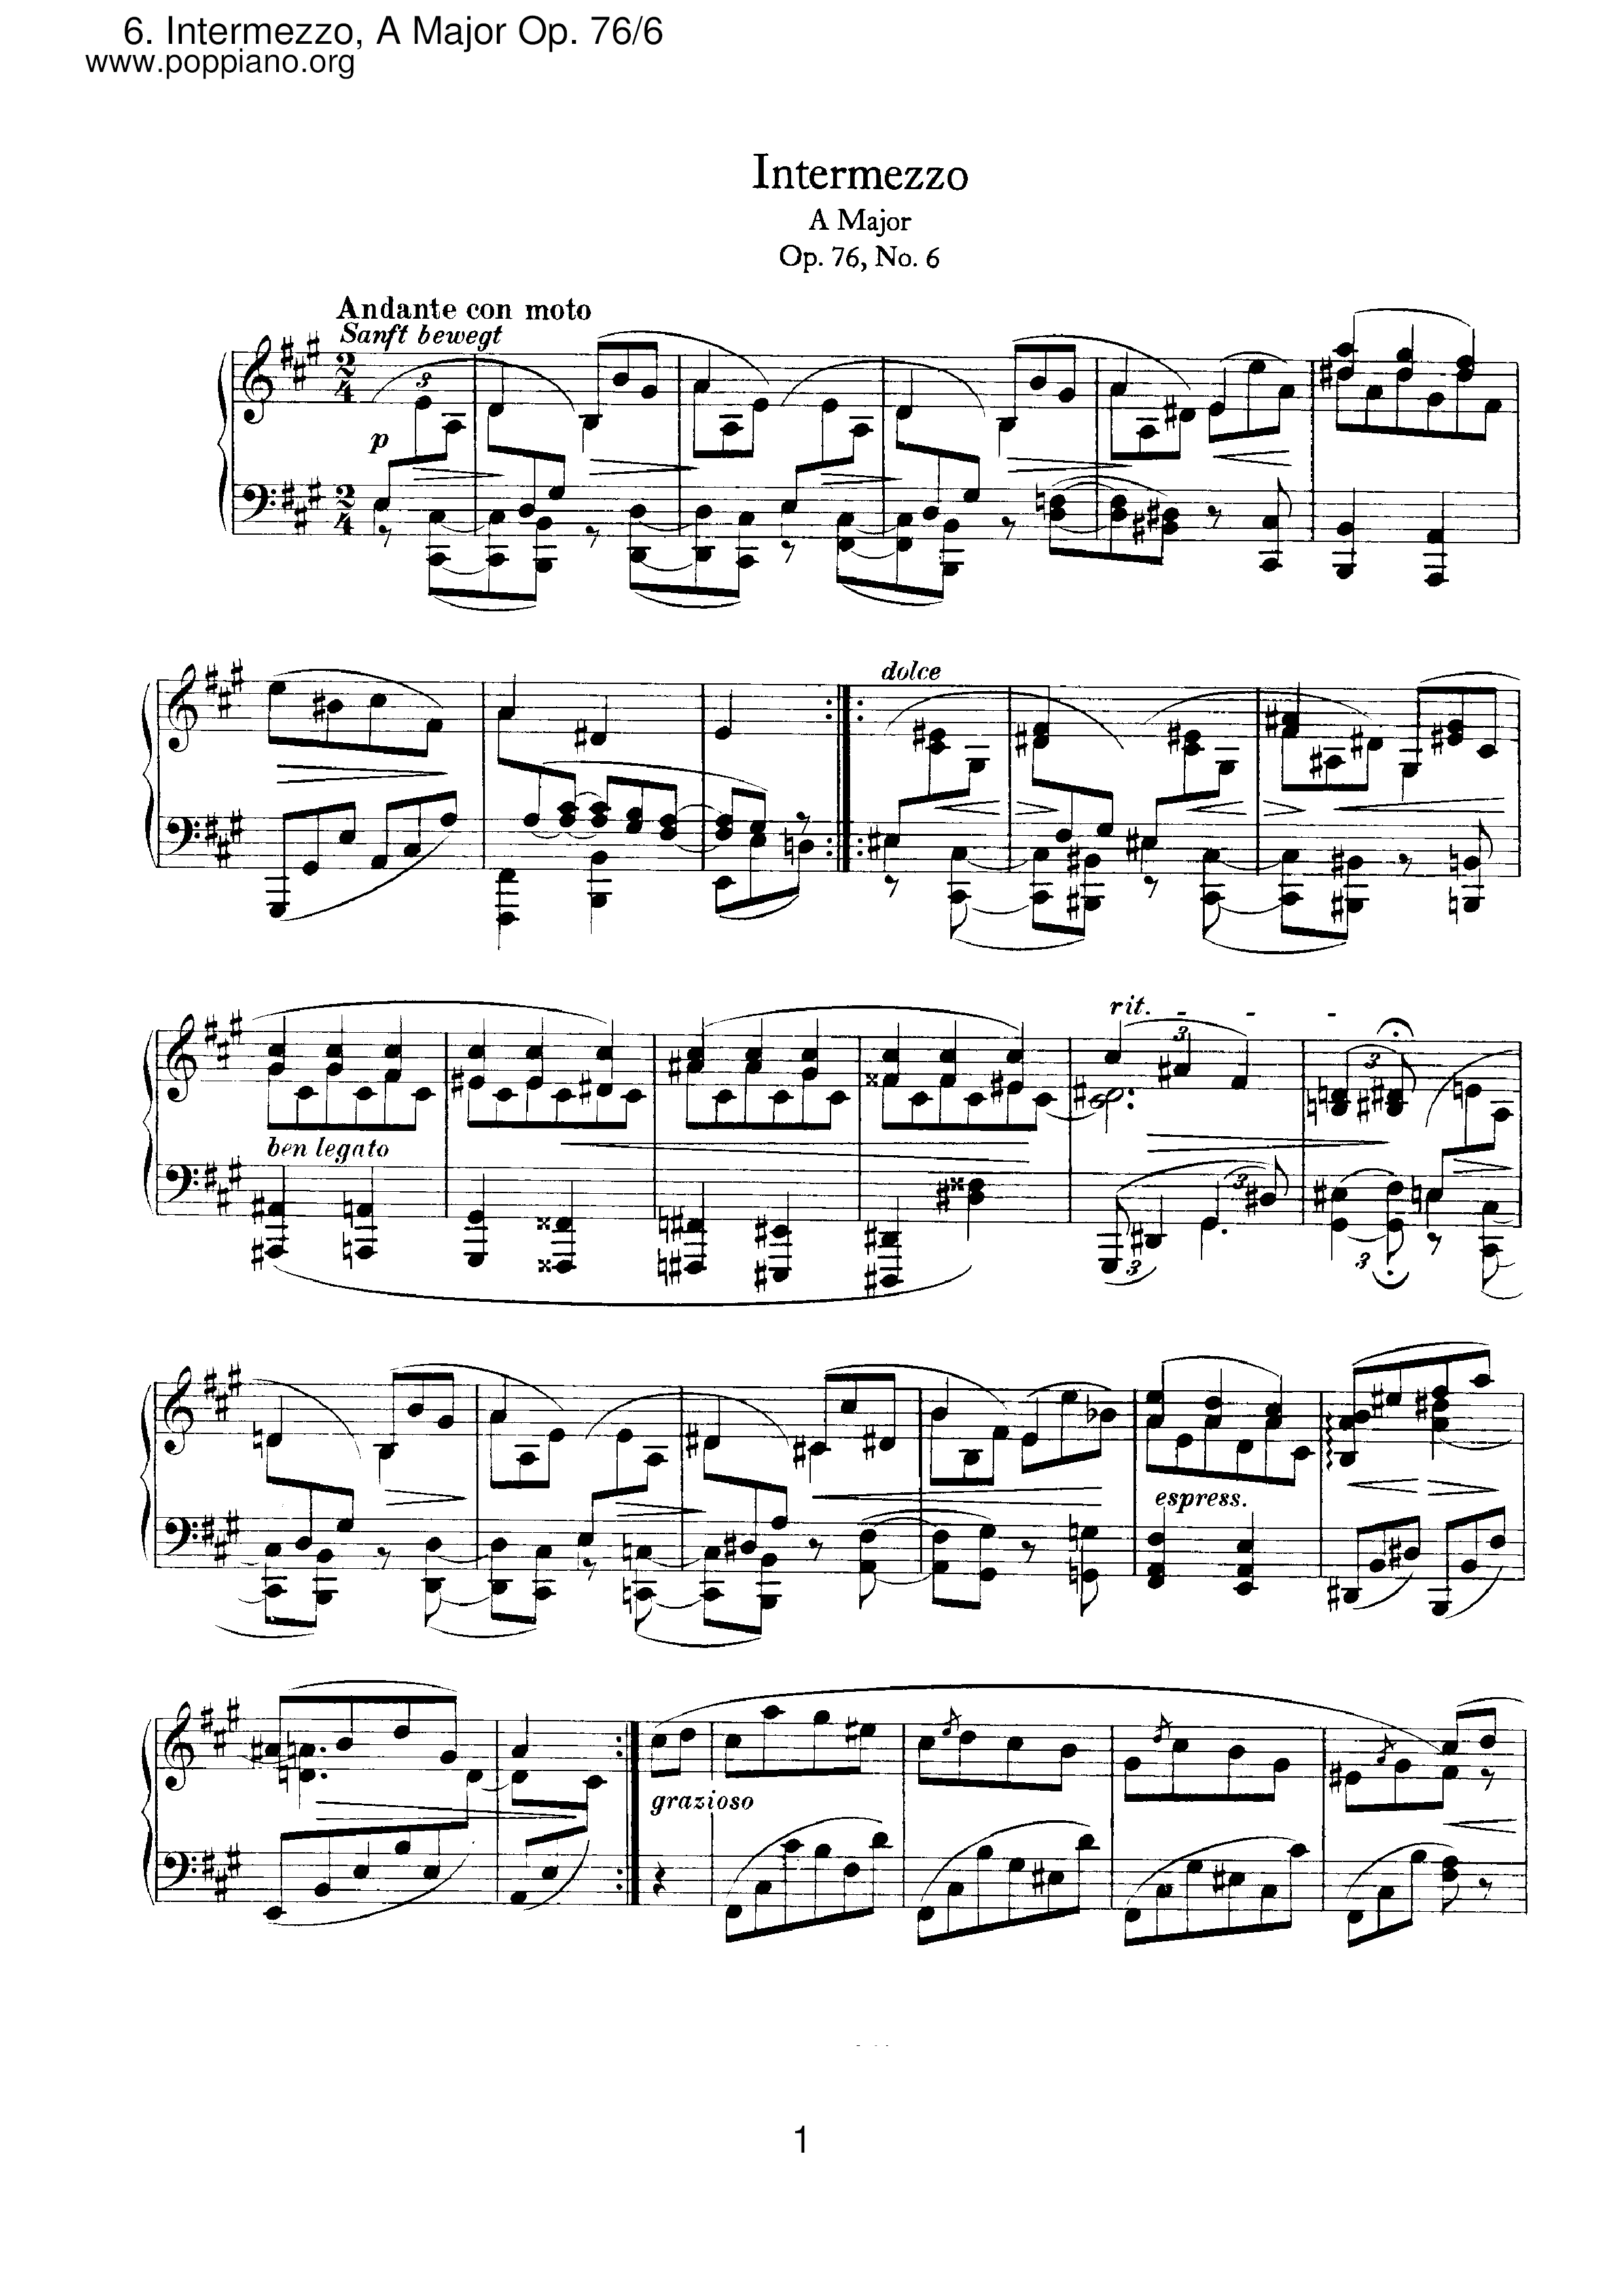 Intermezzo No. 6 in A Major, Op. 76 - Andante con motoピアノ譜